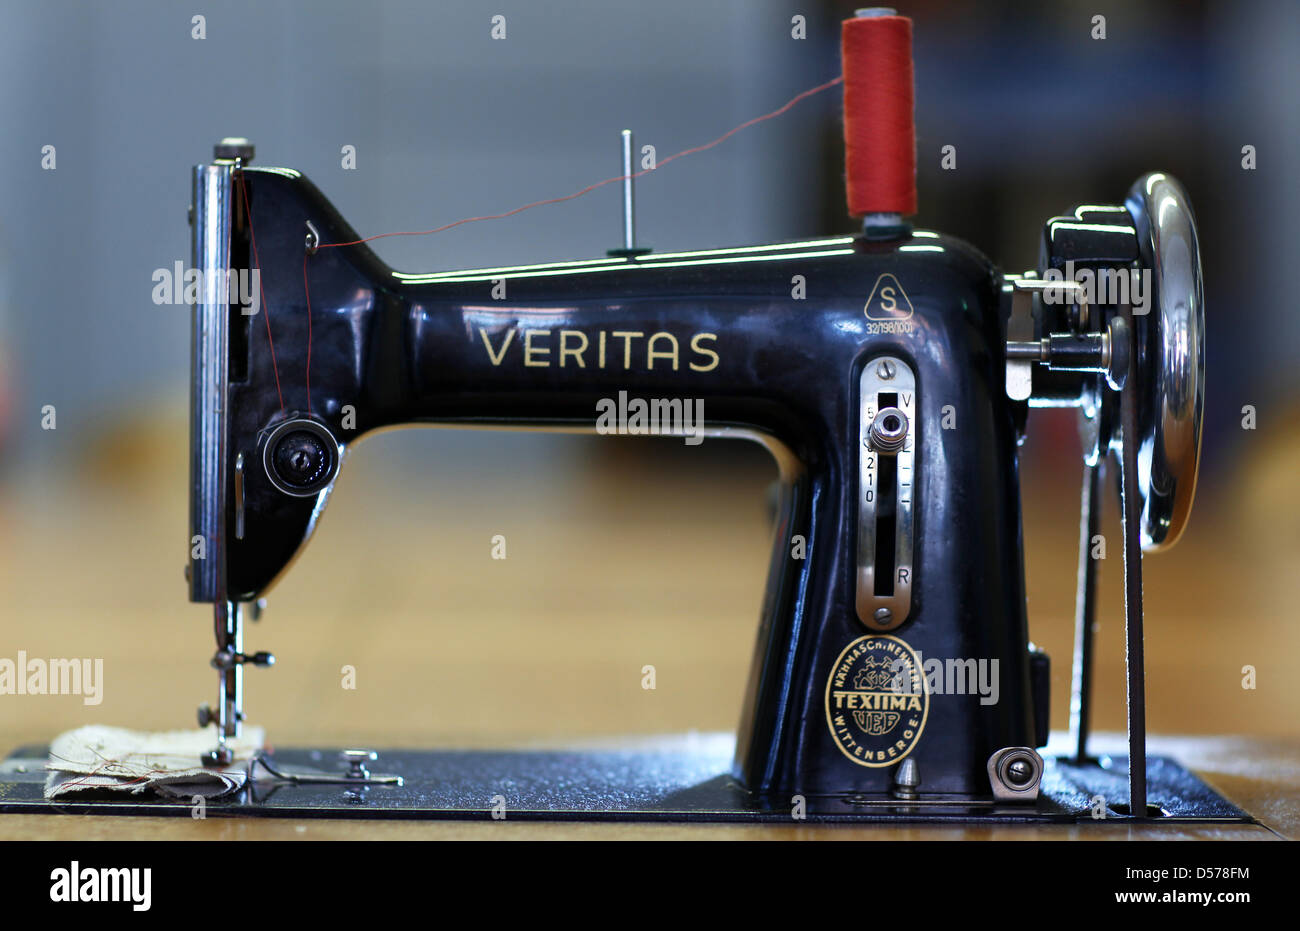 Un visitatore al Museo della macchina da cucire occhi una Veritas macchina  da cucire dating 1952 a Wittenberge, Germania, 22 aprile 2010. Il museo  mette più di 200 storico macchine da cucire